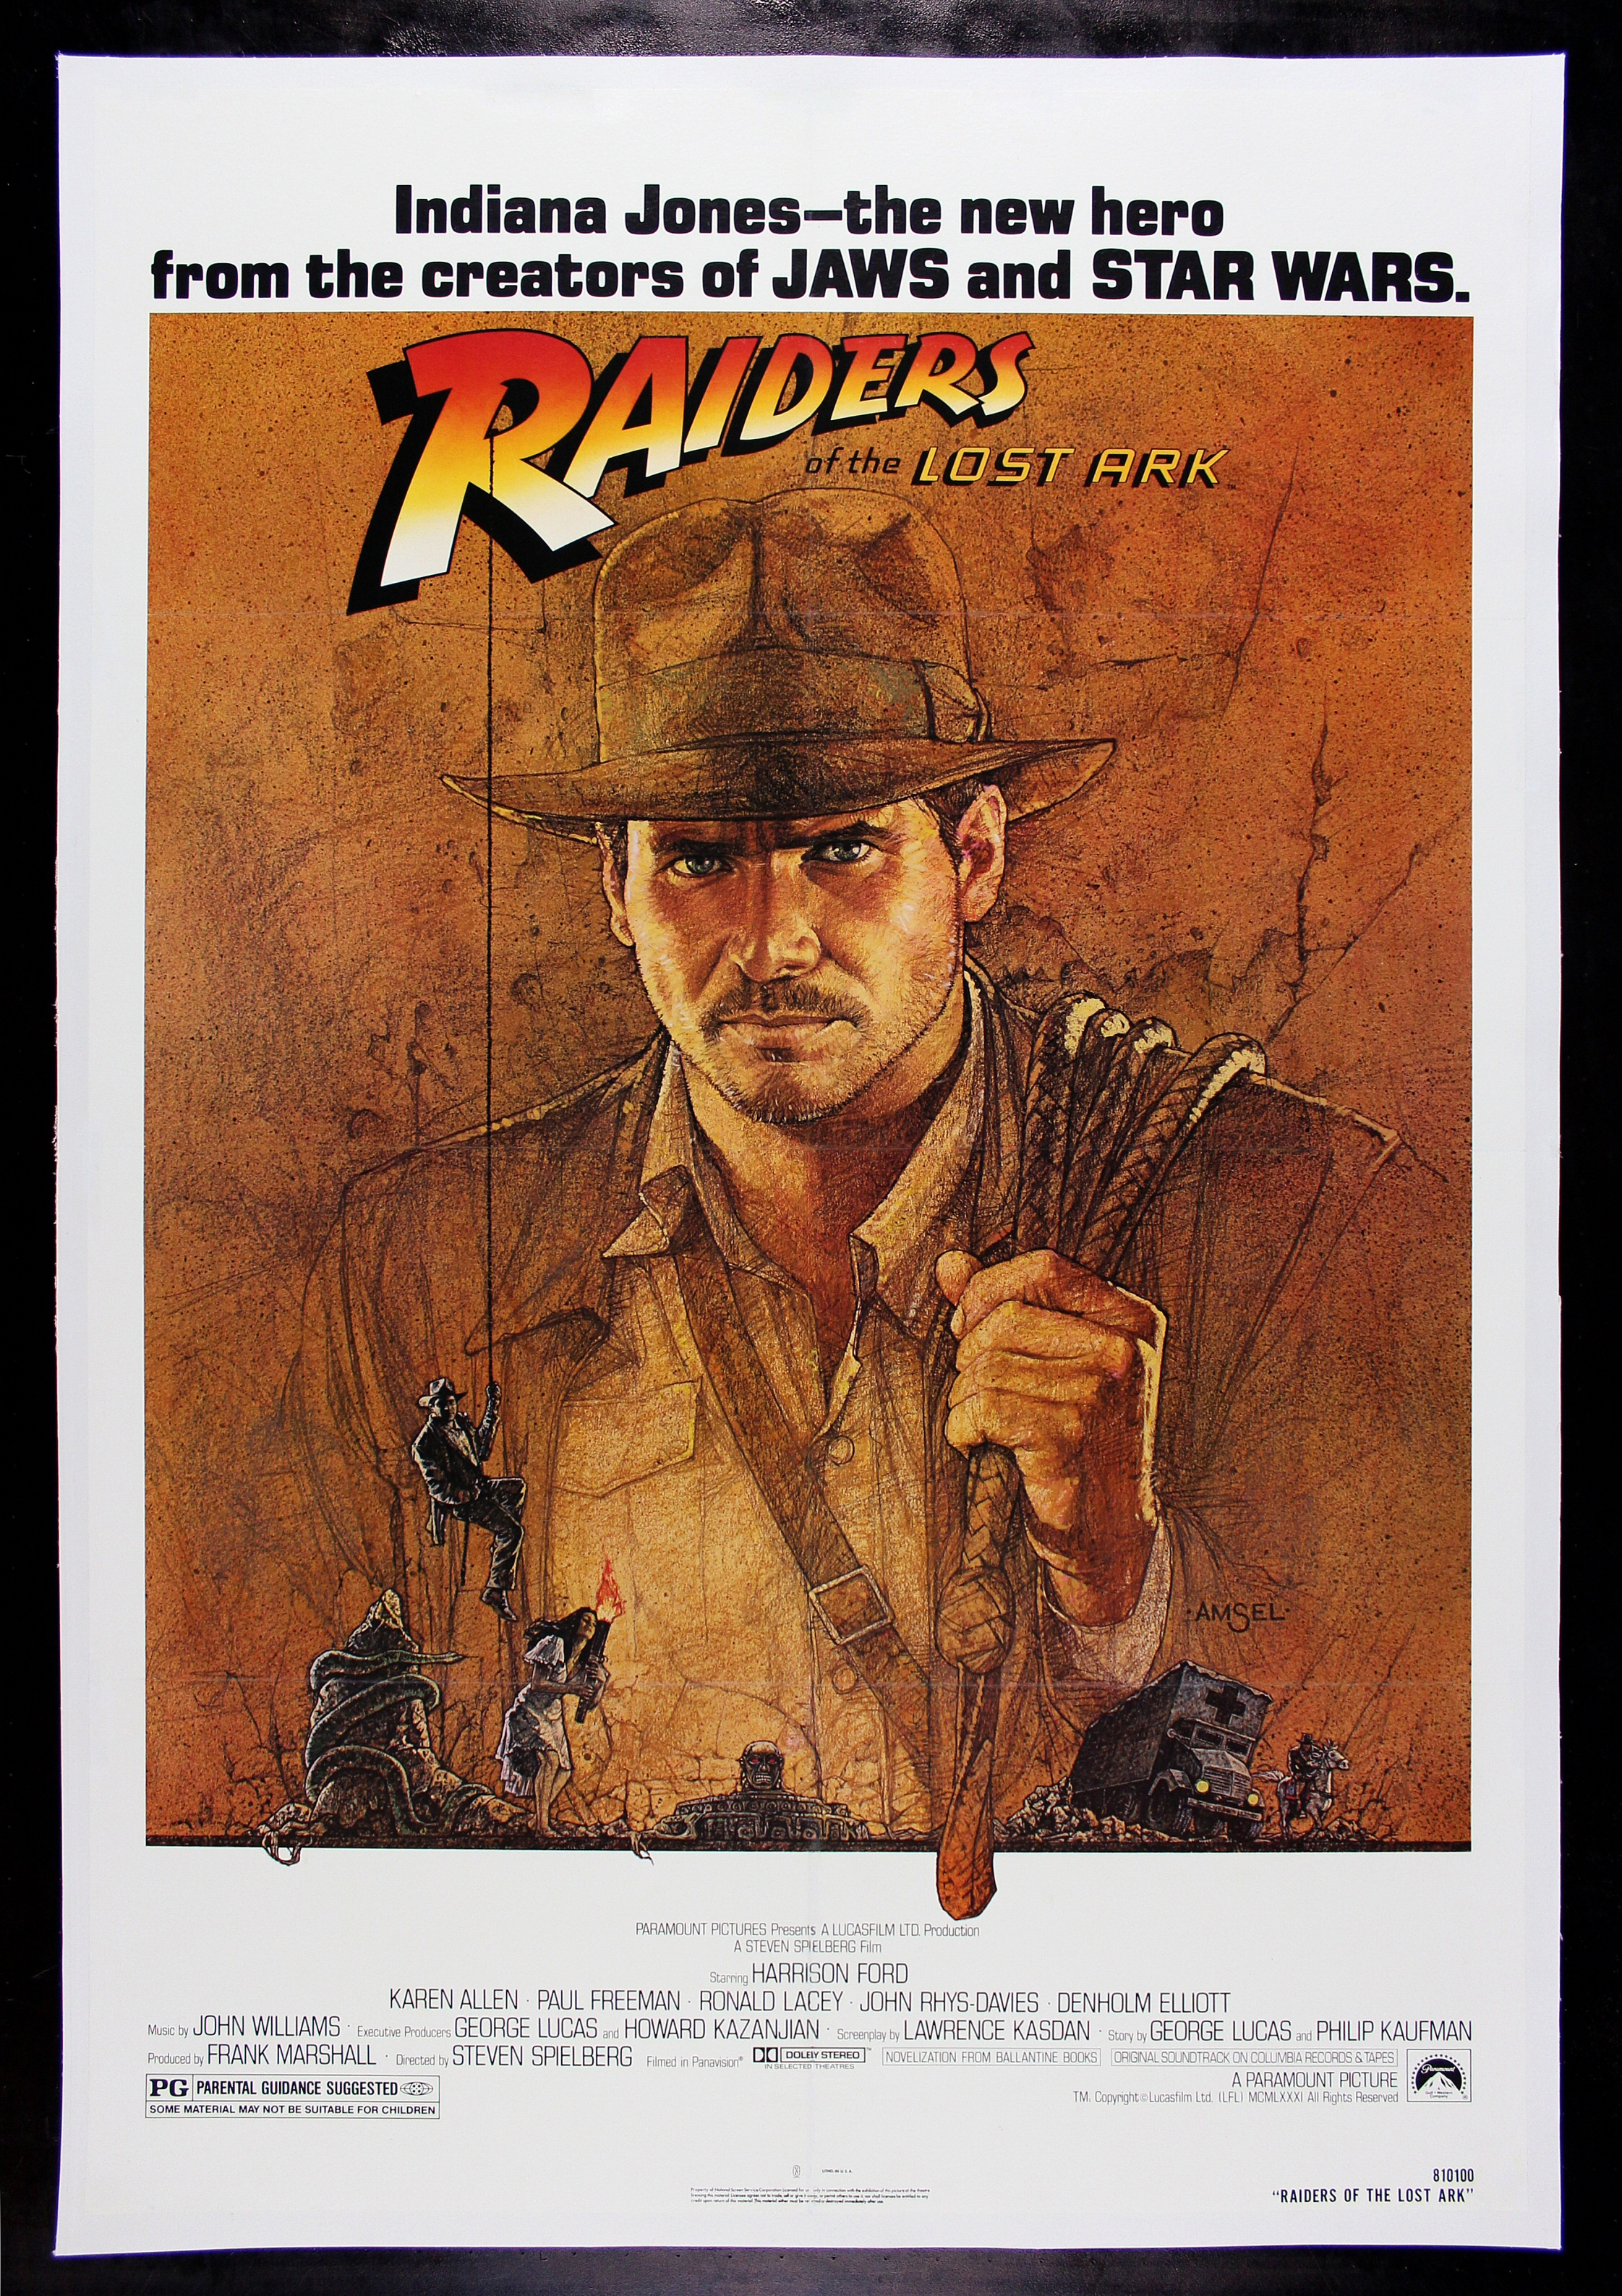 Analysis Of Indiana Jones And The Raiders